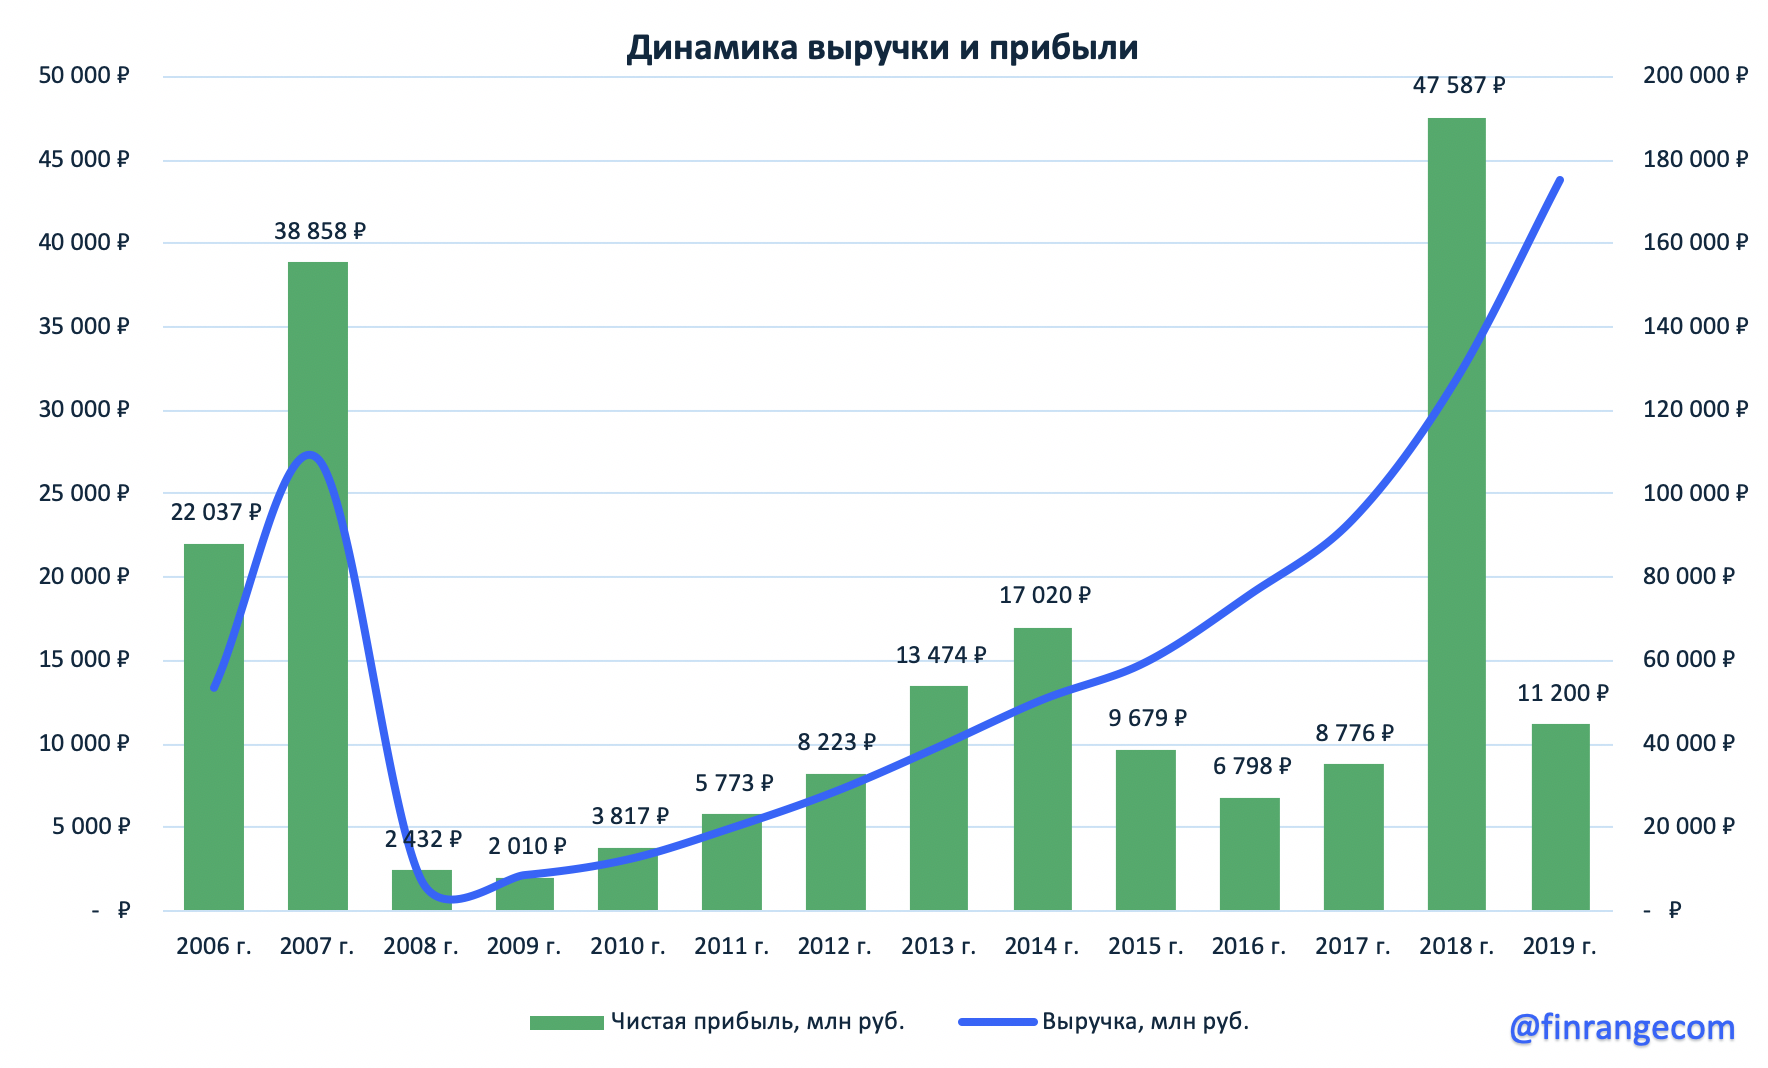 Яндекс - падение прибыли не повод для паники